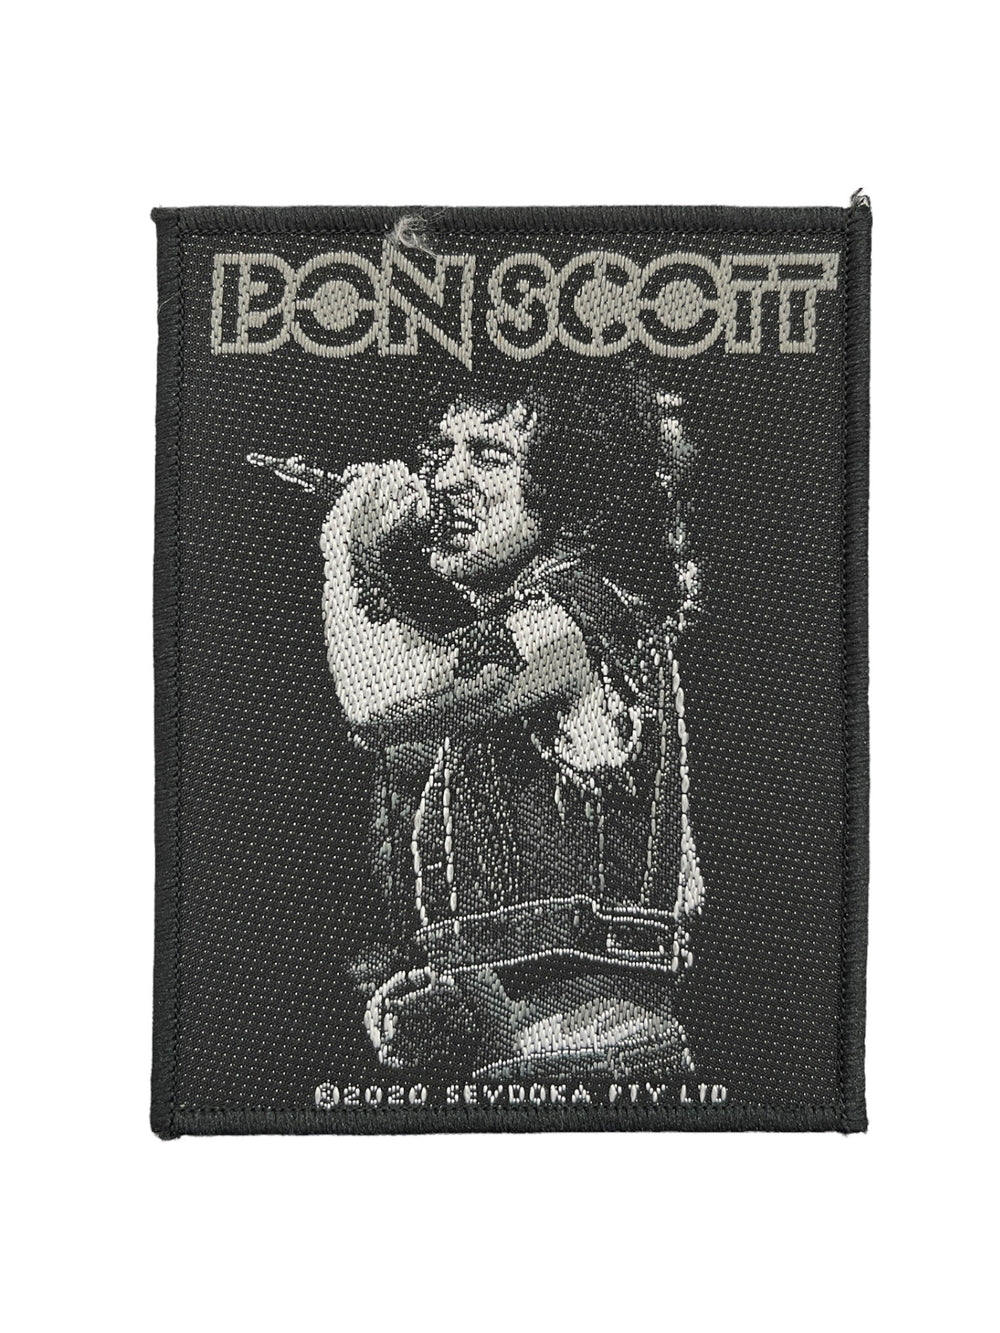 AC/DC Bon Scott Official Woven Patch Brand New